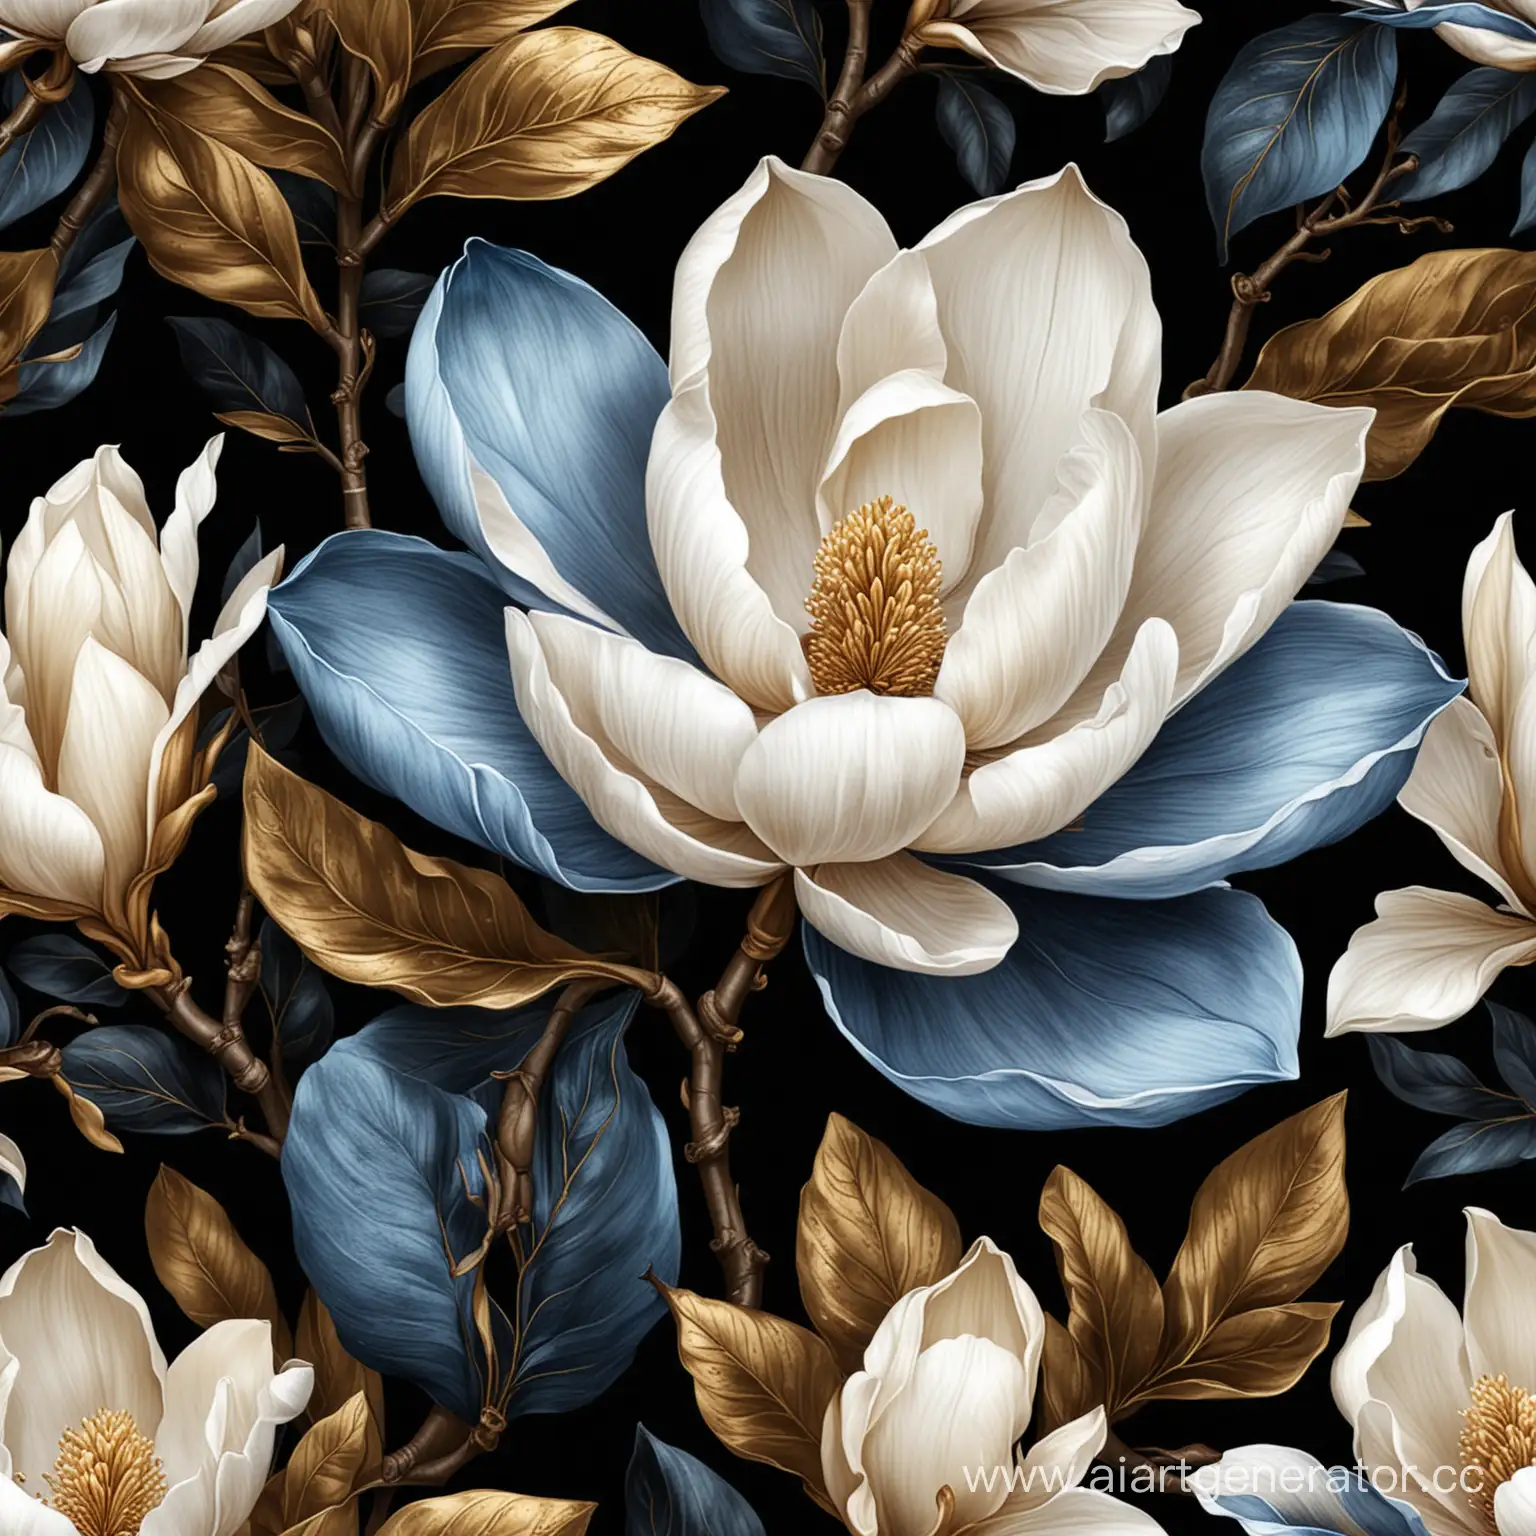 Elegant-Golden-and-Blue-Magnolia-Flower-Vector-Illustration-on-Black-Background